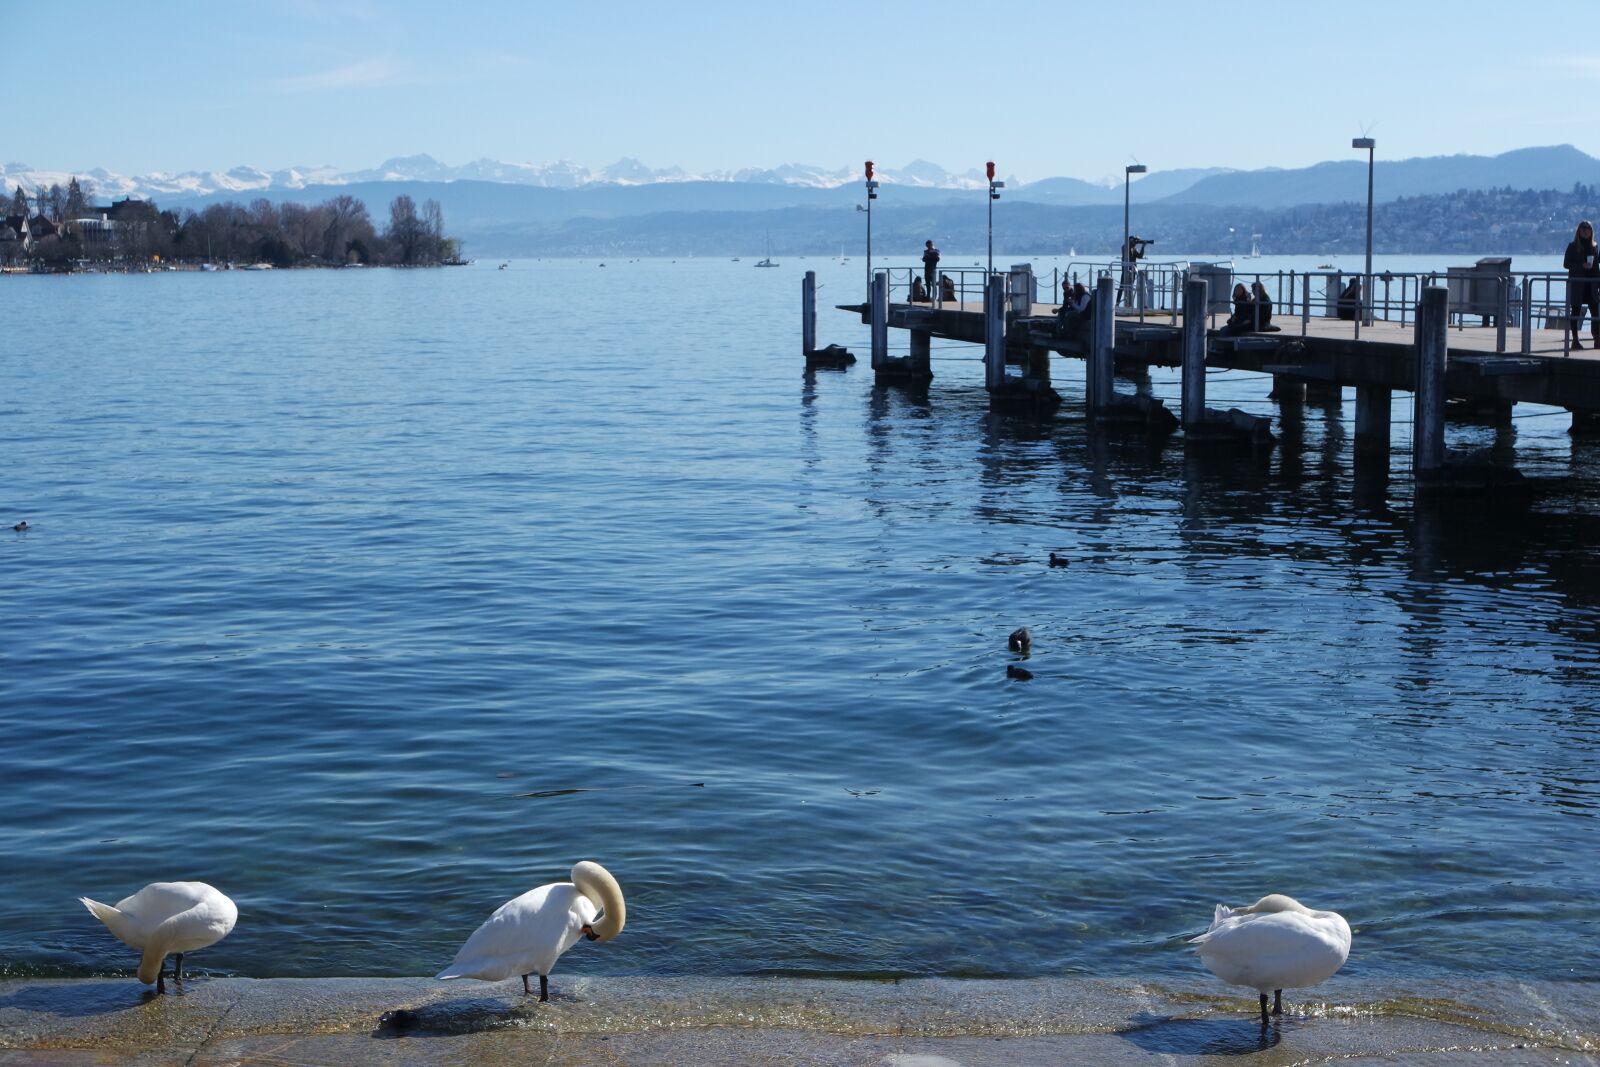 Samsung NX3000 sample photo. Zurich, lake zurich, b photography